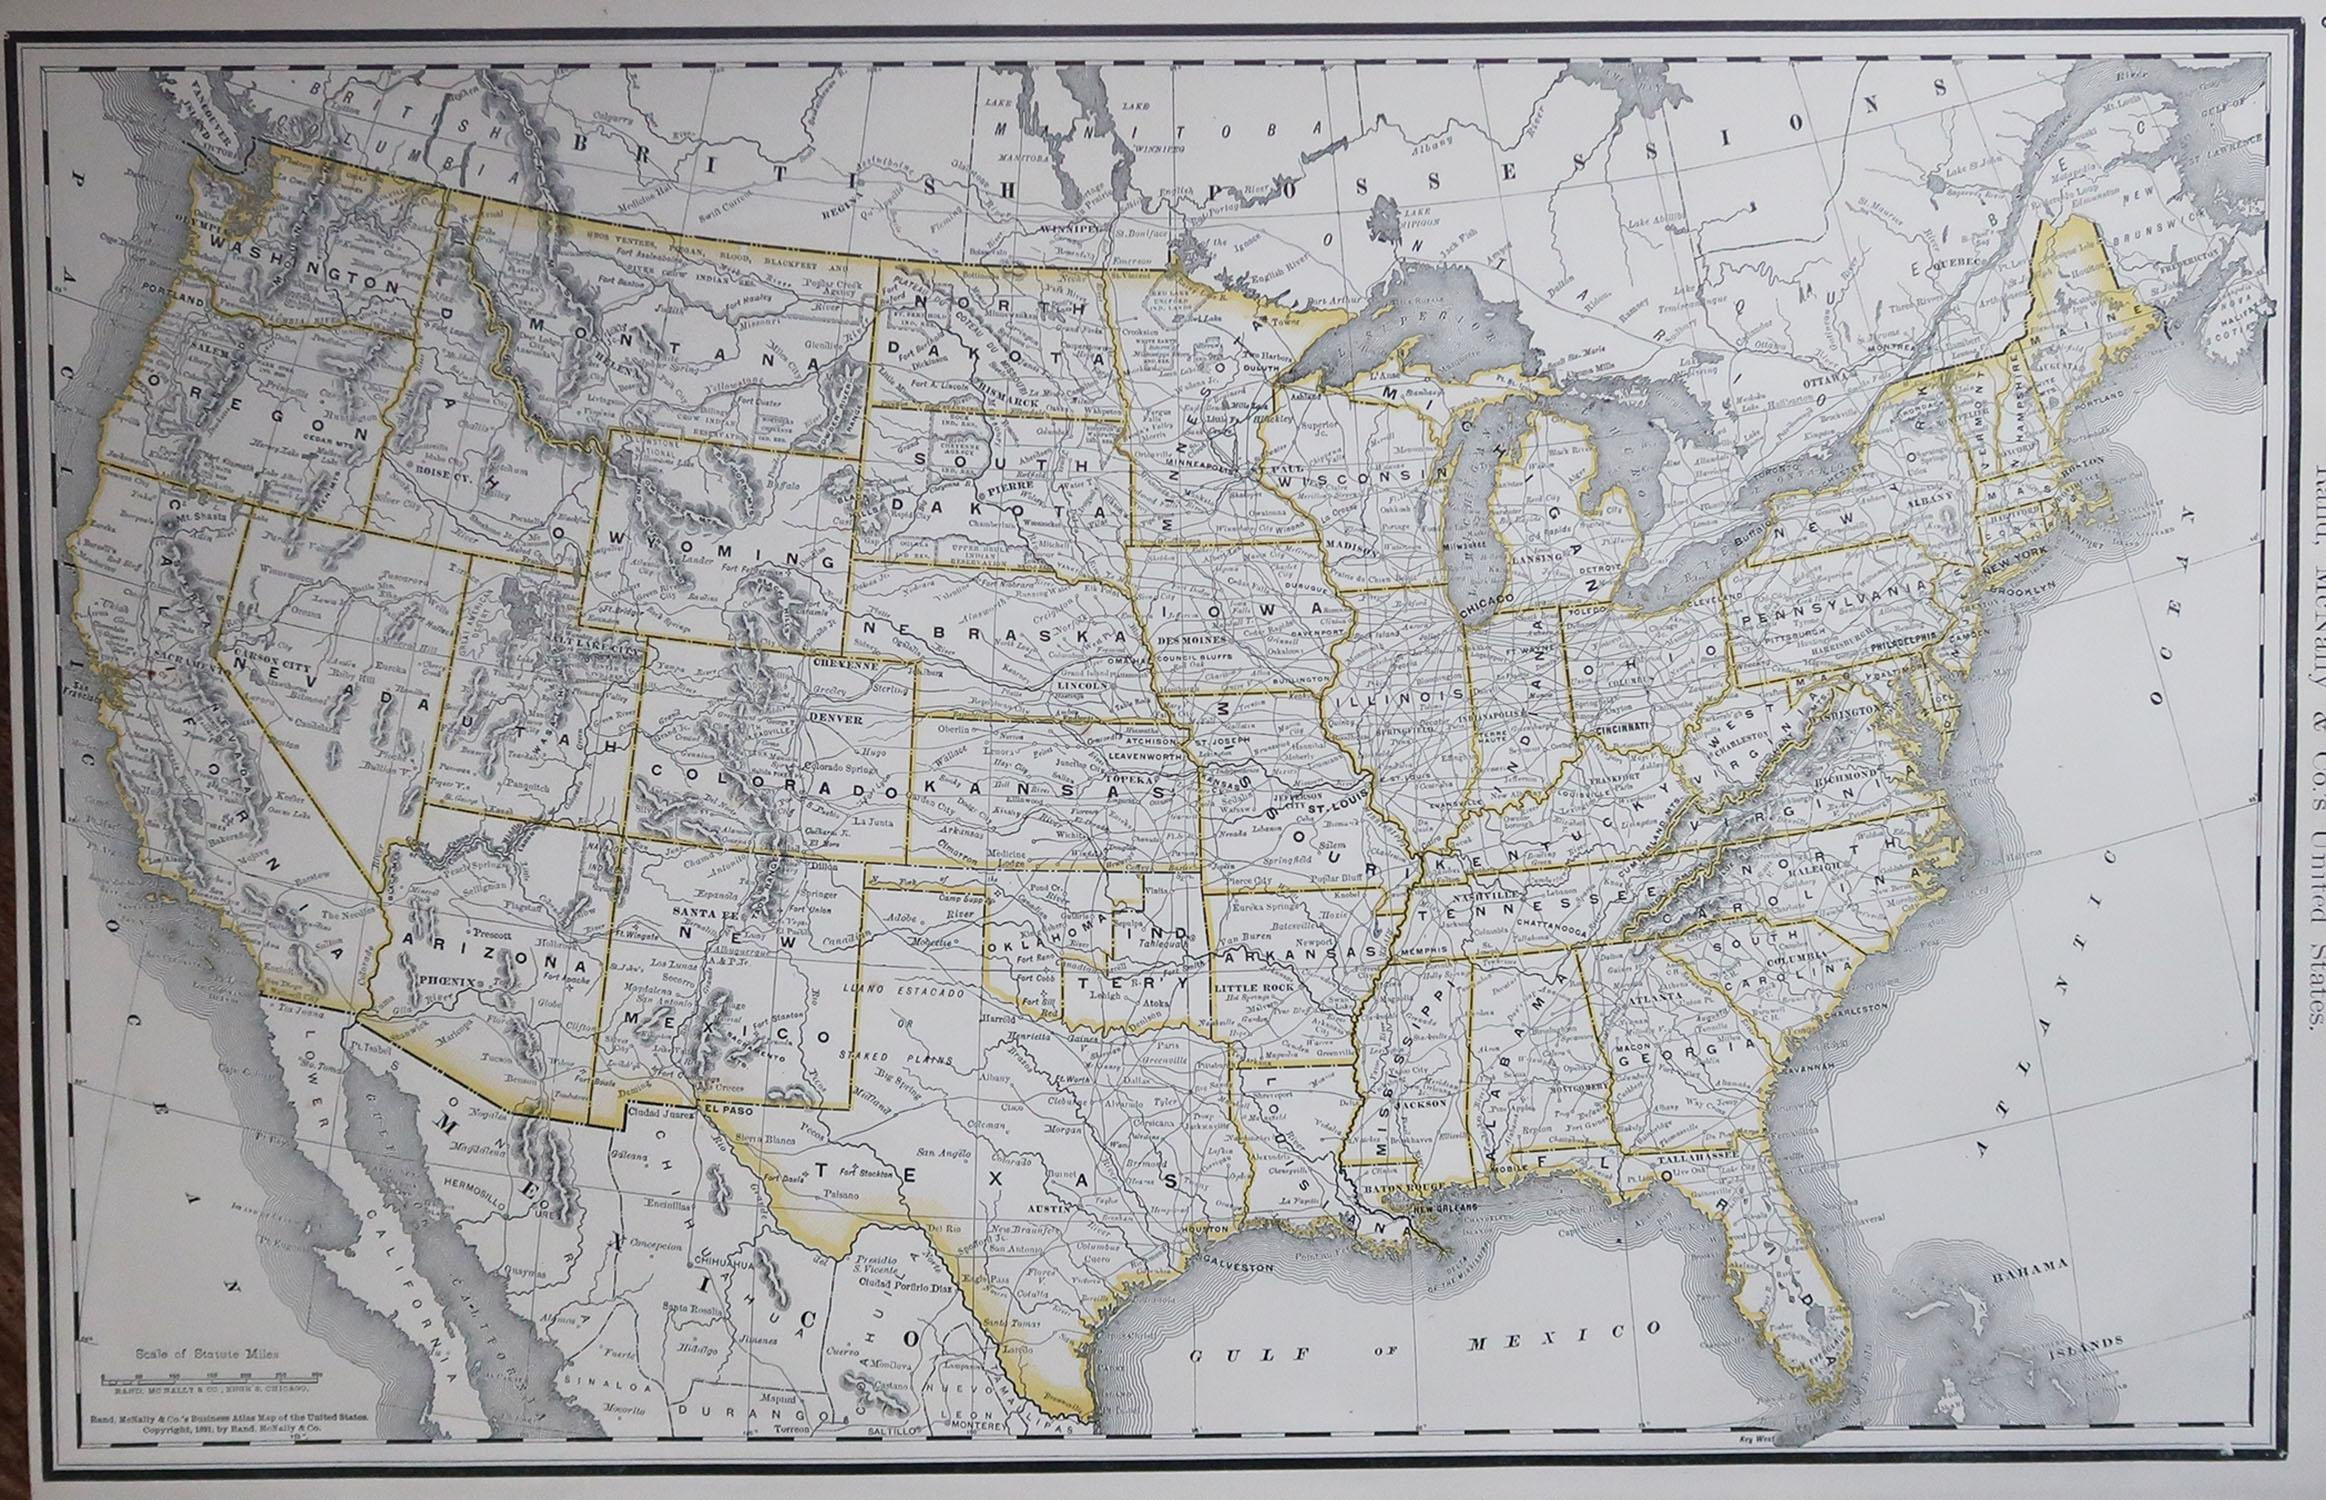 Fabelhafte Karte der Vereinigten Staaten

Original Farbe

Von Rand, McNally & Co.

Datiert 1891

Ungerahmt

Kostenloser Versand.